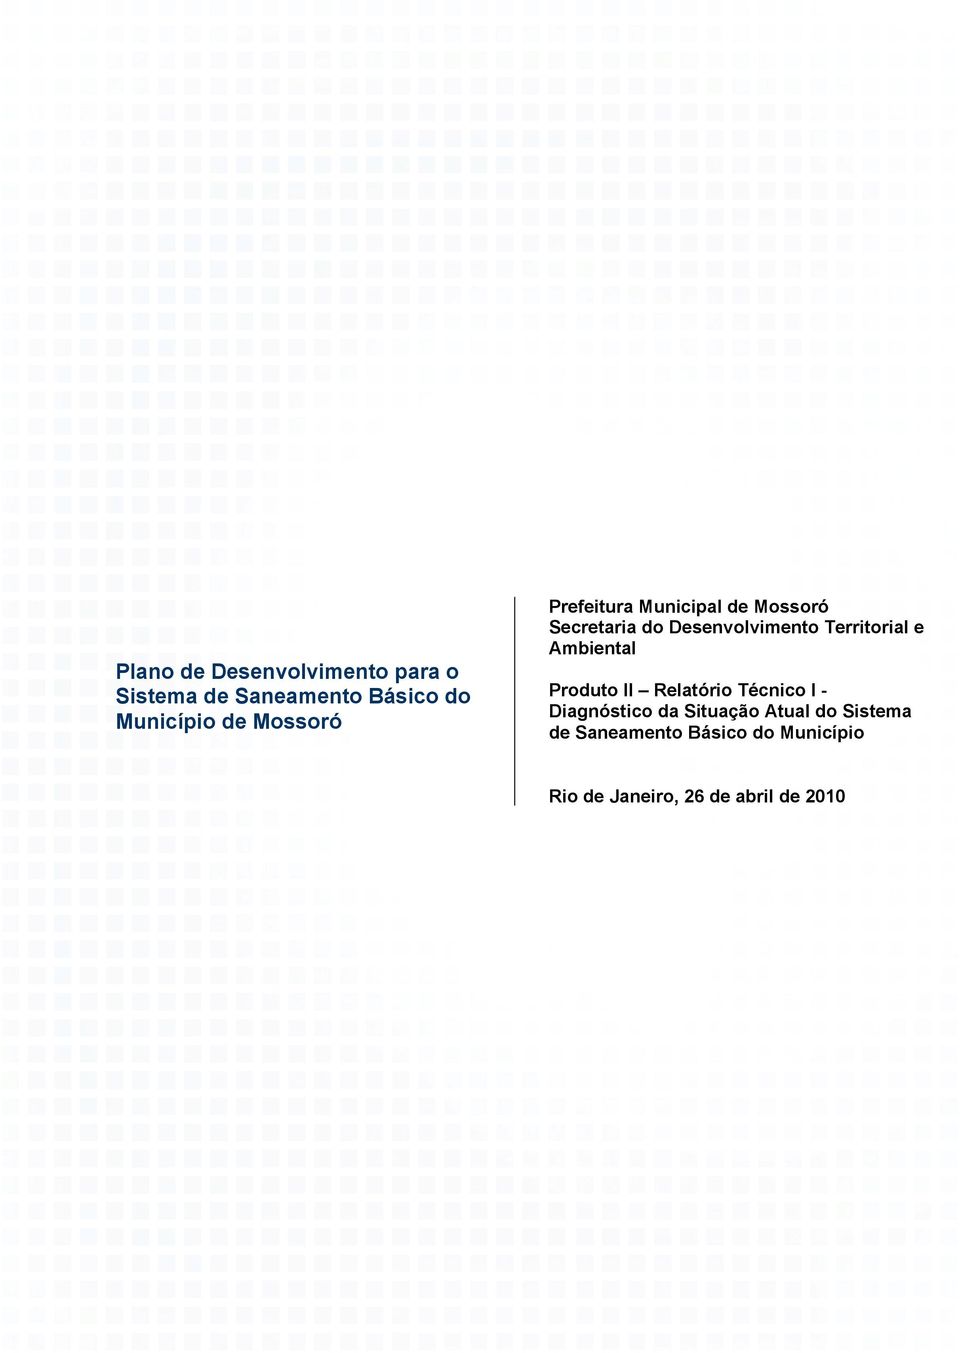 II Relatório Técnico I - Diagnóstico da Situação Atual do Sistema de Saneamento Básico do